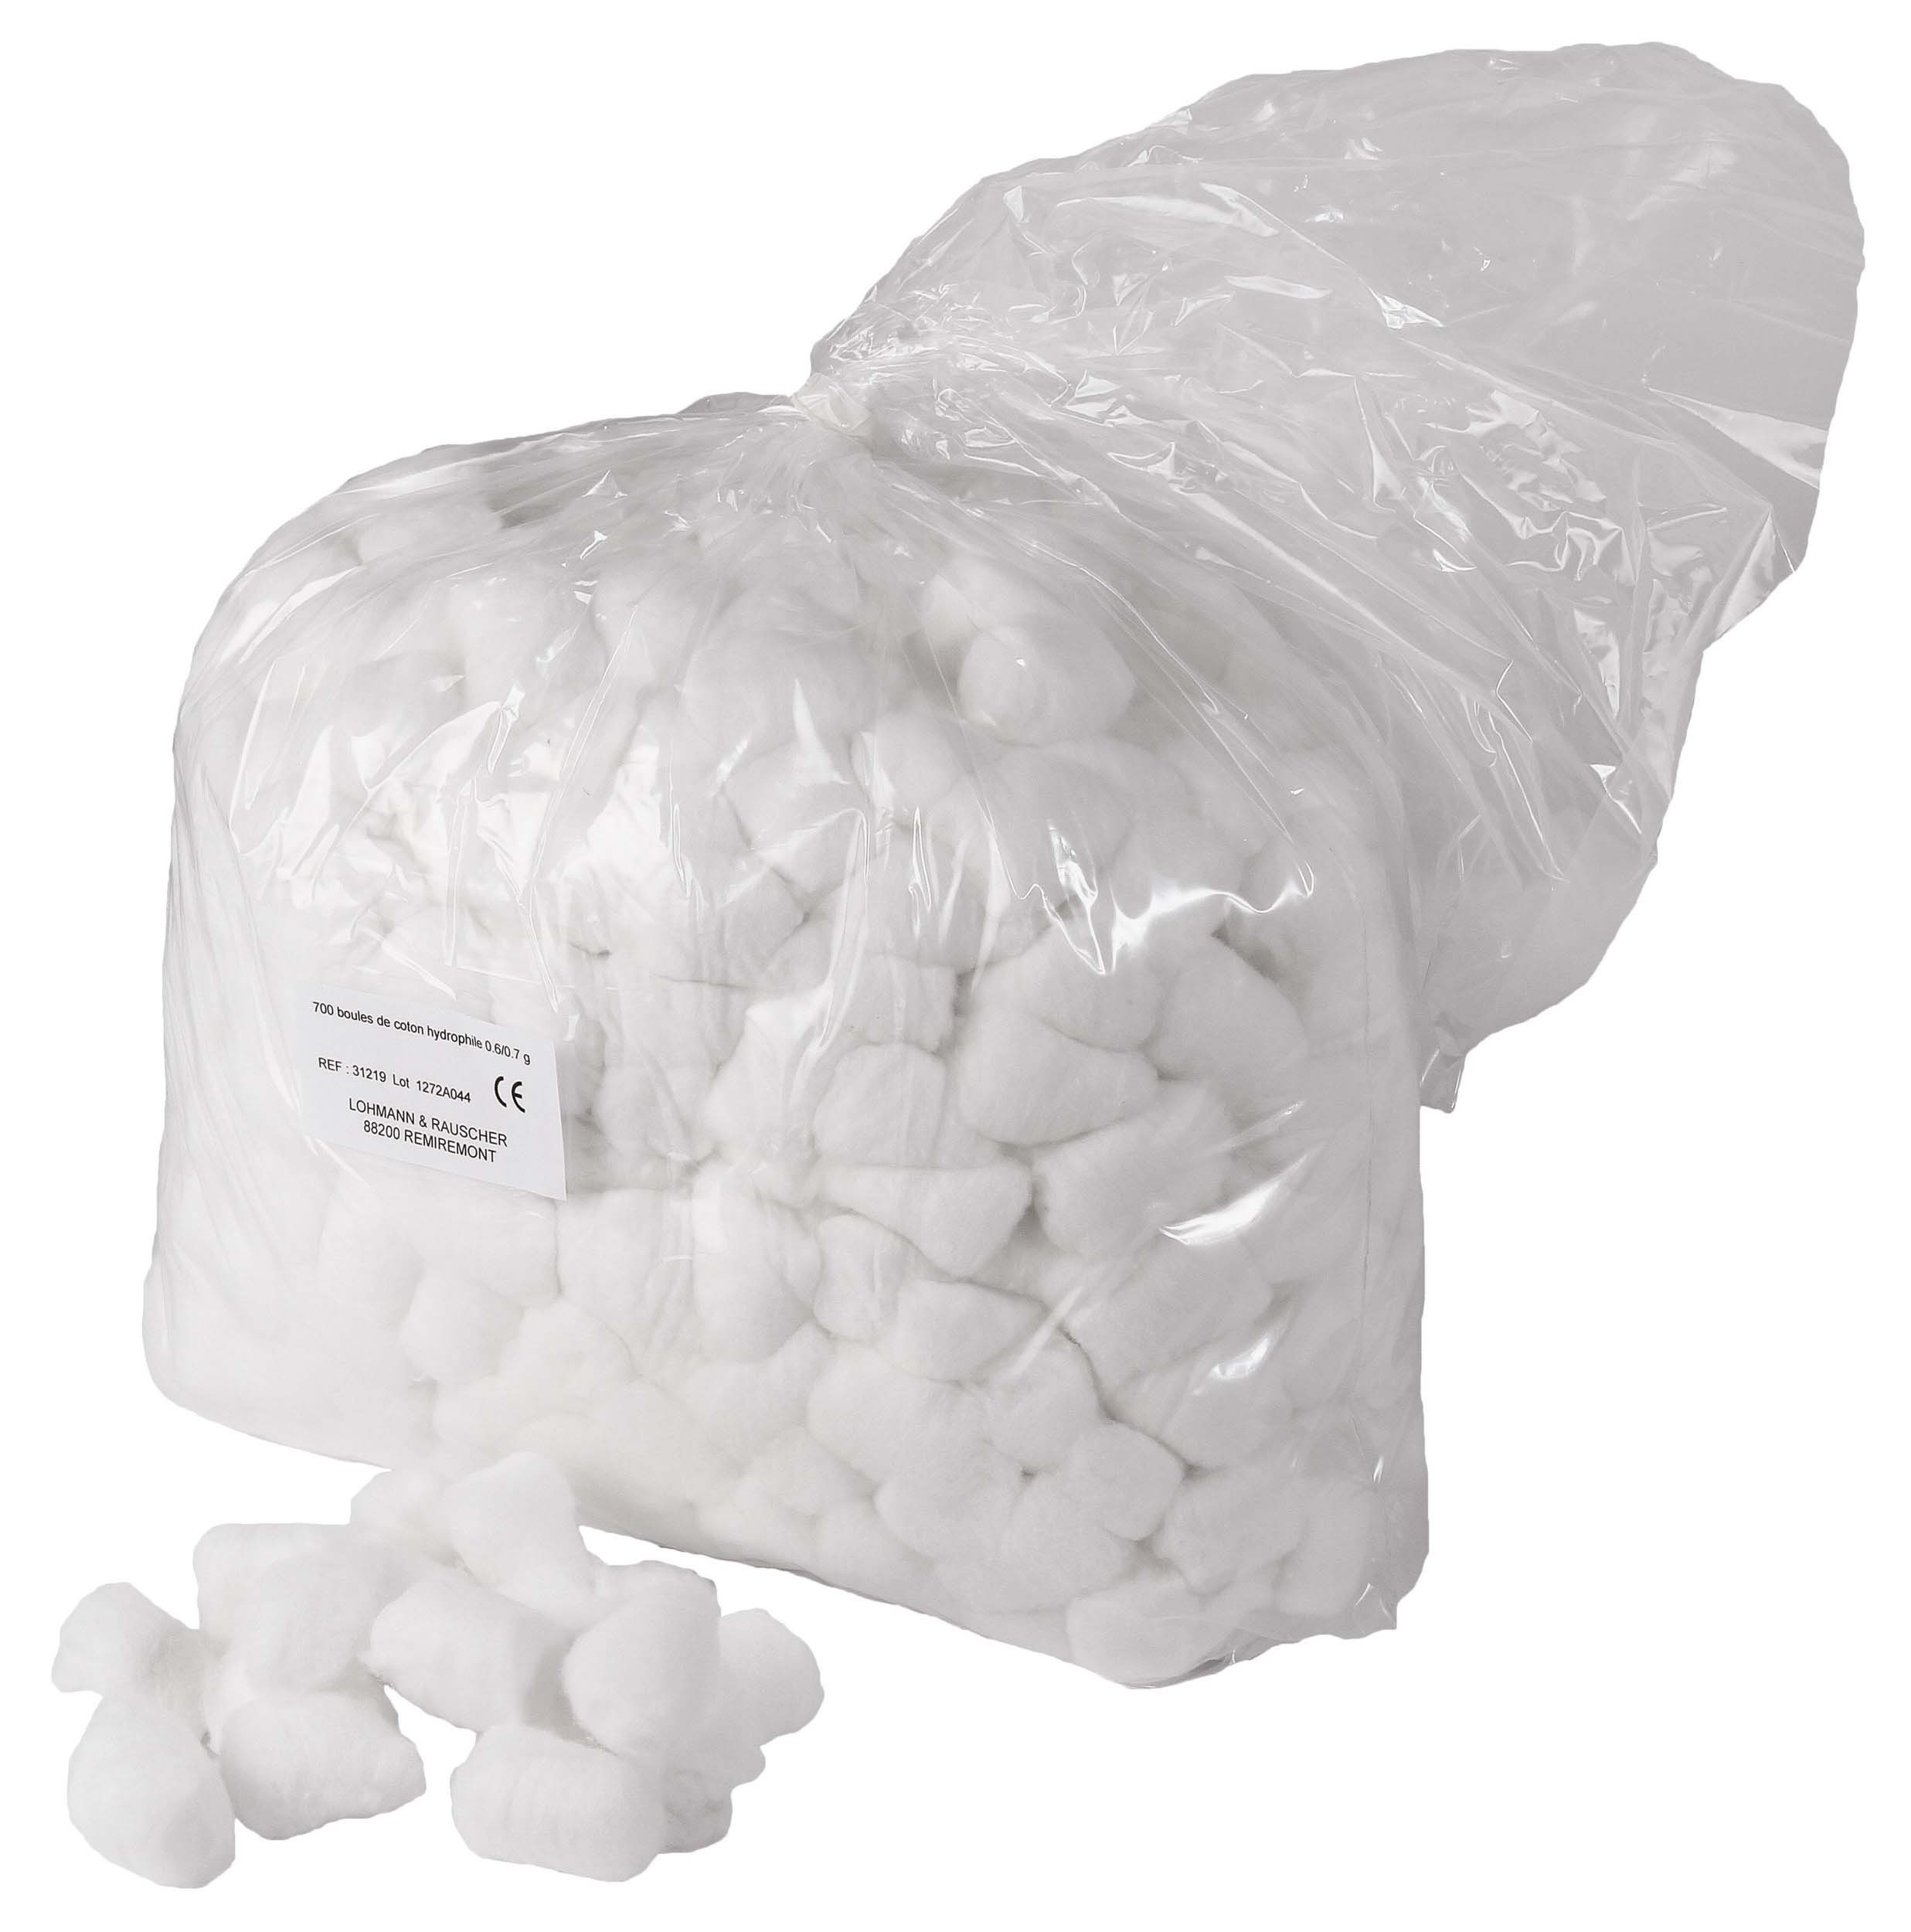 Sachet de boules en coton - 30 g - Blanc